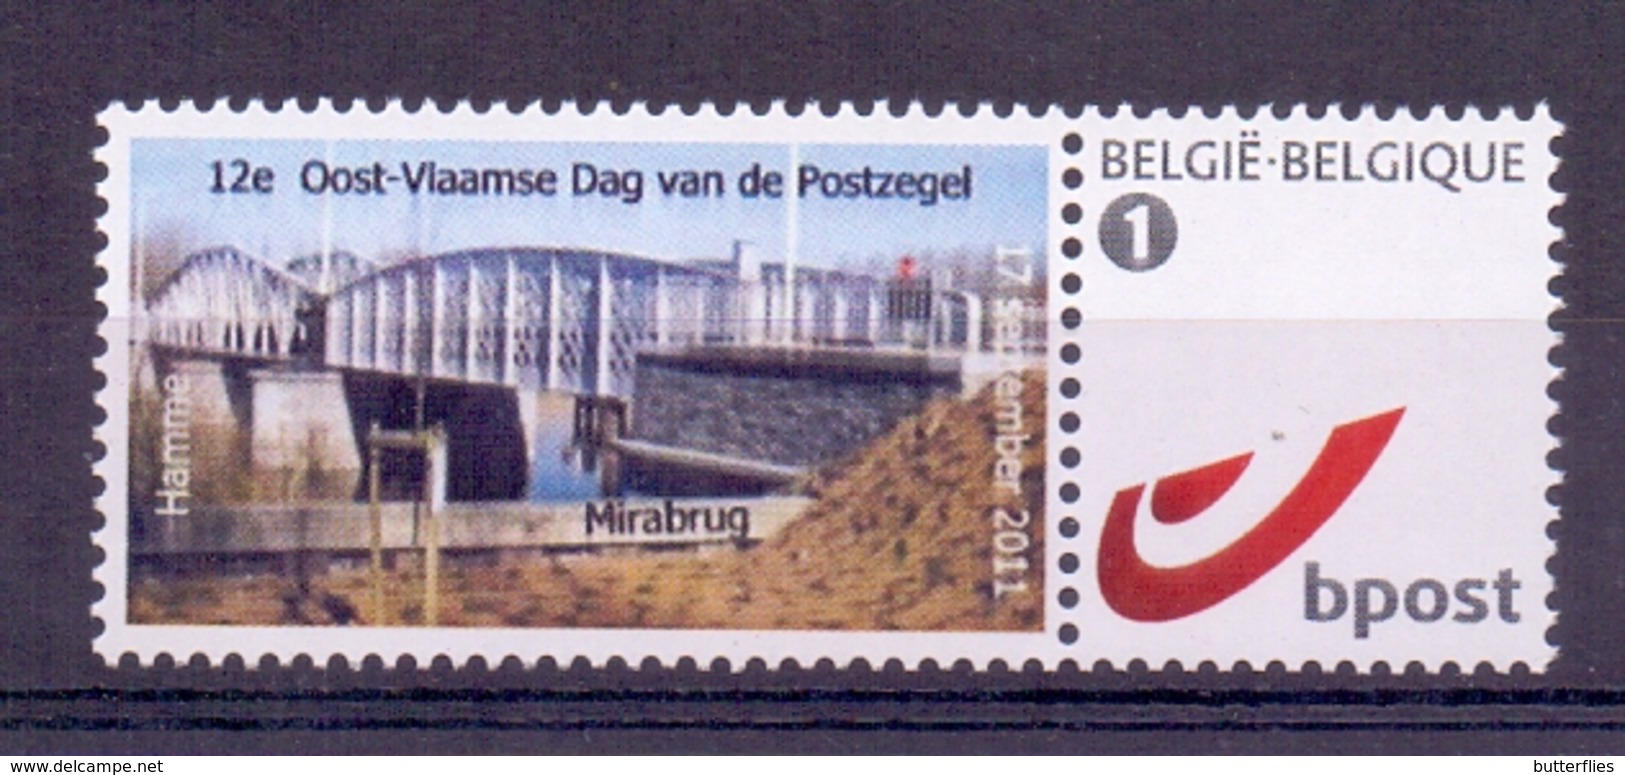 Belgie - 2011 - Duo Stamp - Hamme 2011 - 12e Oost-Vlaamse Dag Van De Postzegel - Mirabrug - Nuevos